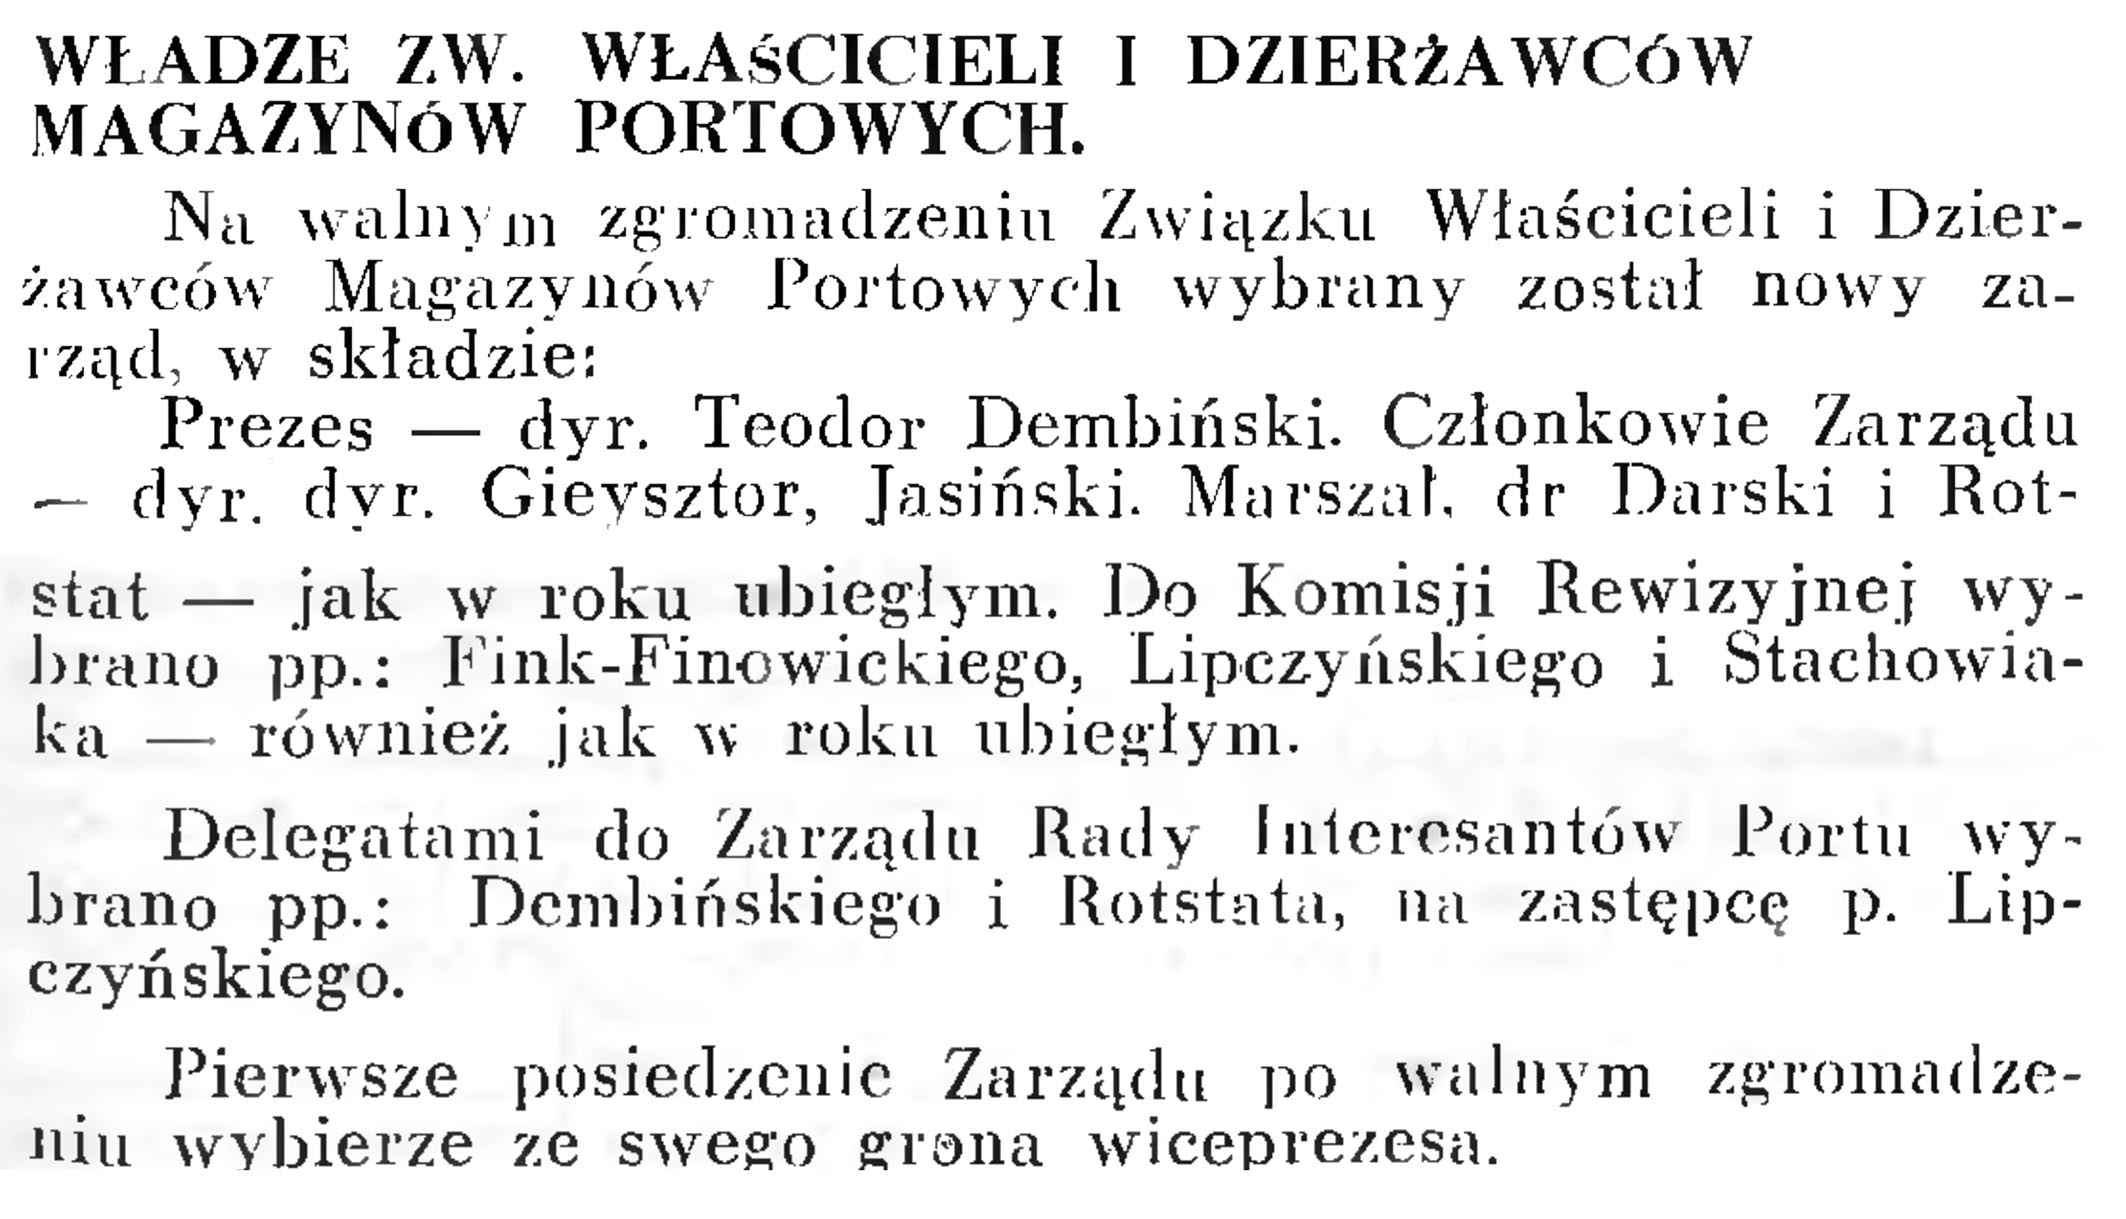 Władze Zw. Właścicieli i Dzierżawców Magazynów Portowych // Wiadomości Portowe. - 1939, nr 3, s. 17